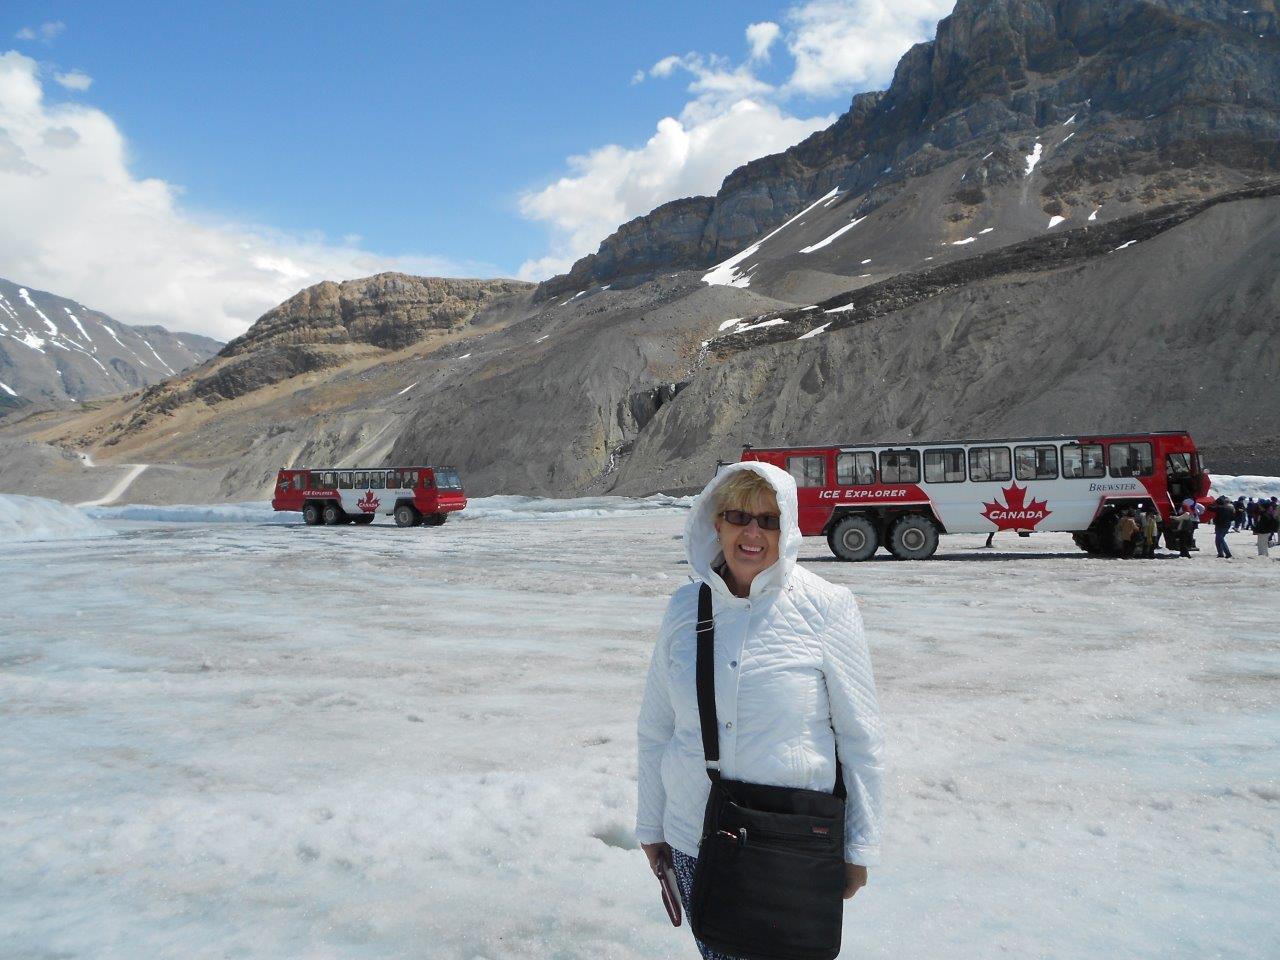 Athabasca Glacier, Canada – June 2015